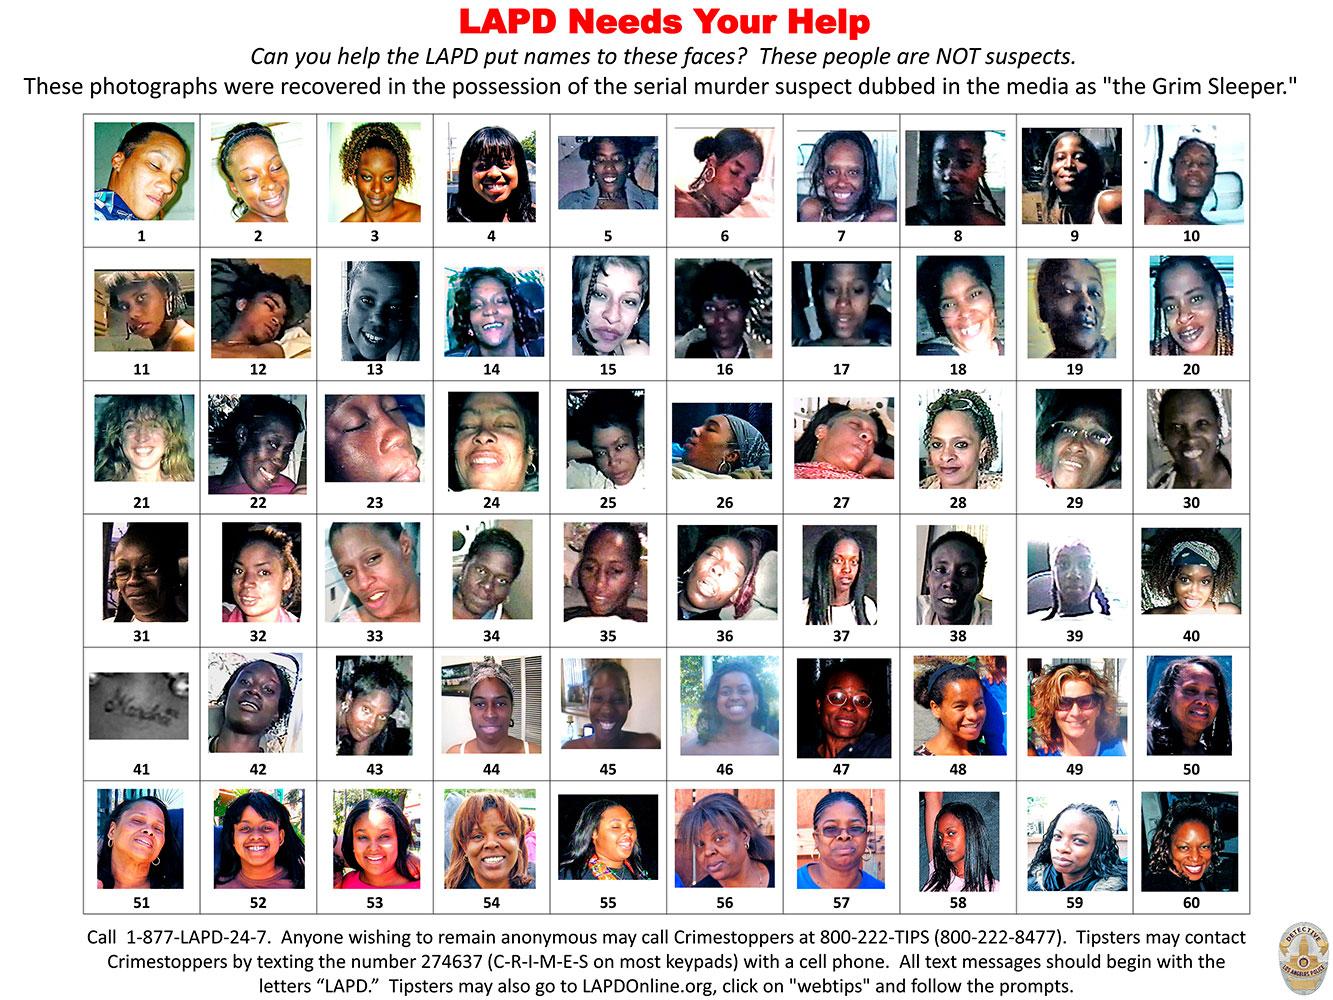 Mängder av fotografier på kvinnor hittades hemma hos Lonnie Franklin Jr. Los Angeles-polisen har gått ut med bilderna för att få reda om kvinnorna saknas. Polisen tror att ”Grim sleeper” kan ha mördat 180 kvinnor.